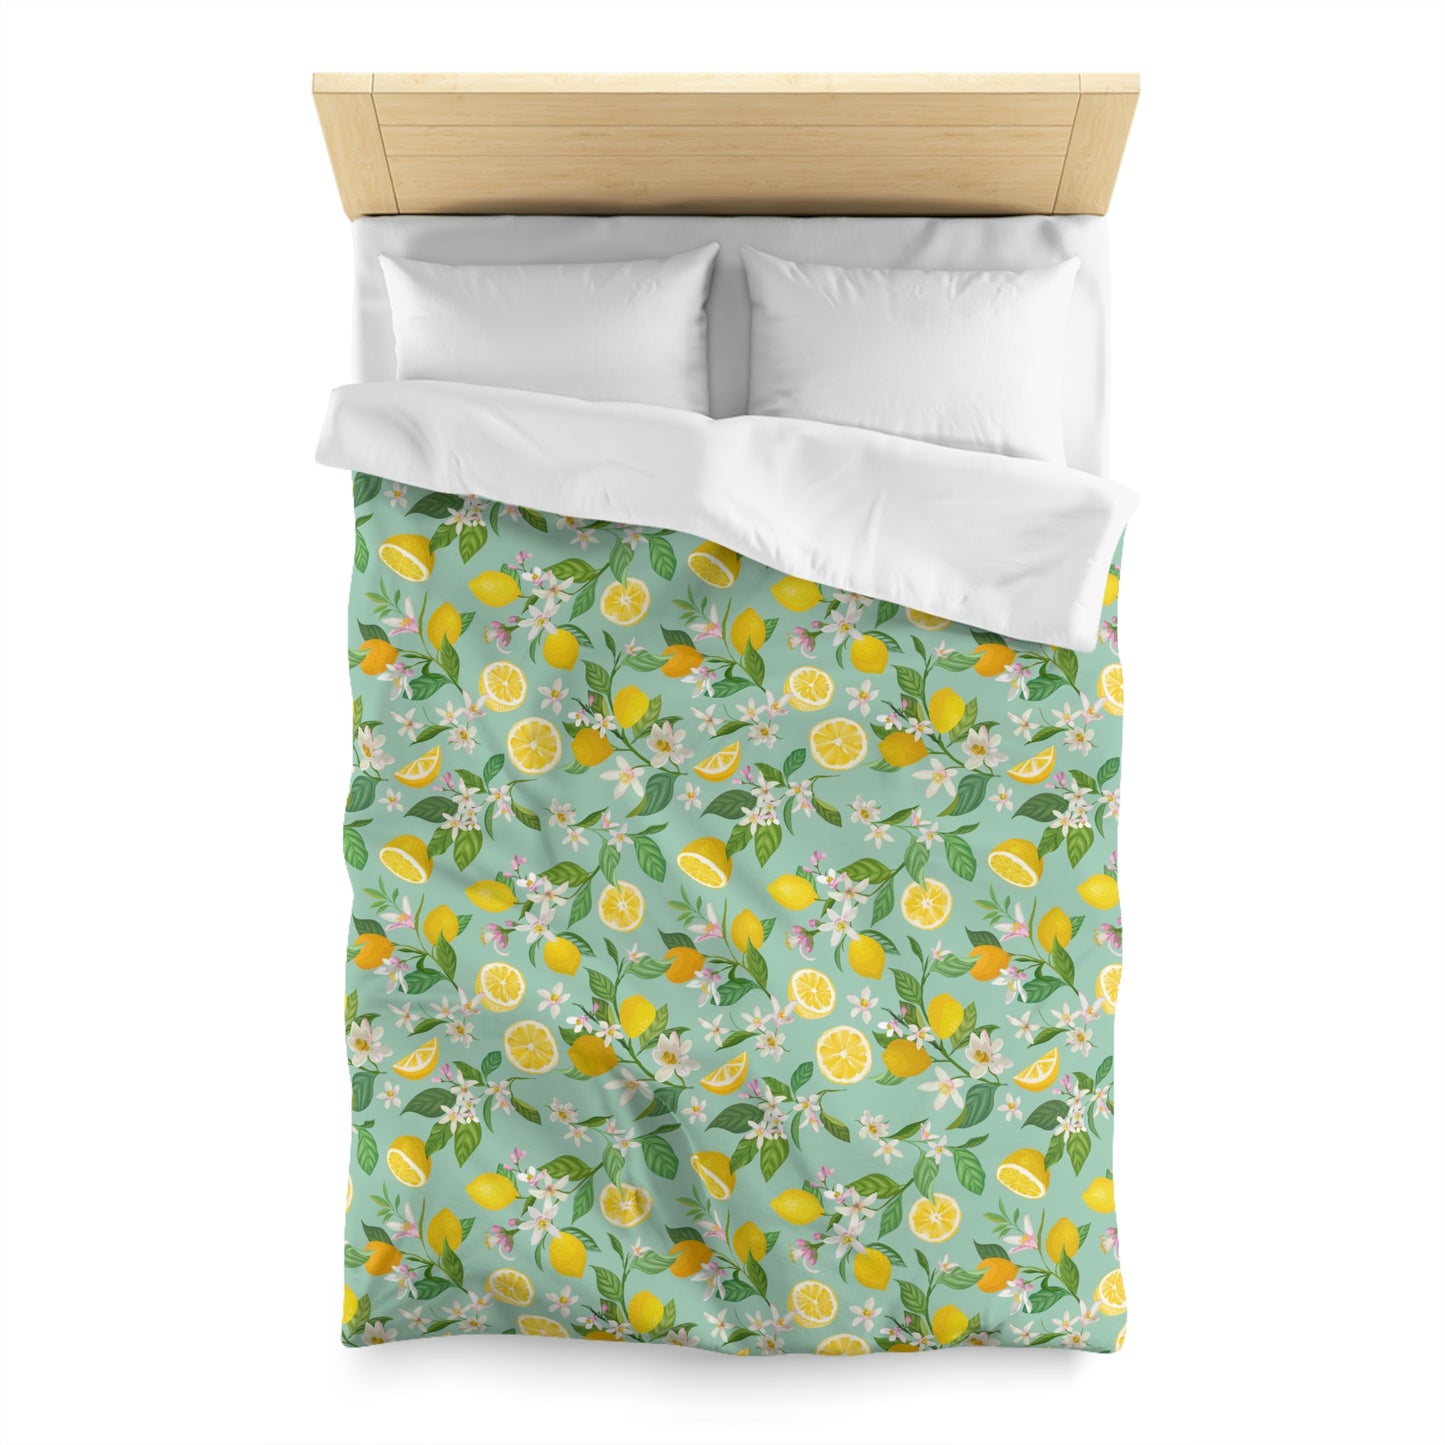 Lemons and Flowers Microfiber Duvet Cover